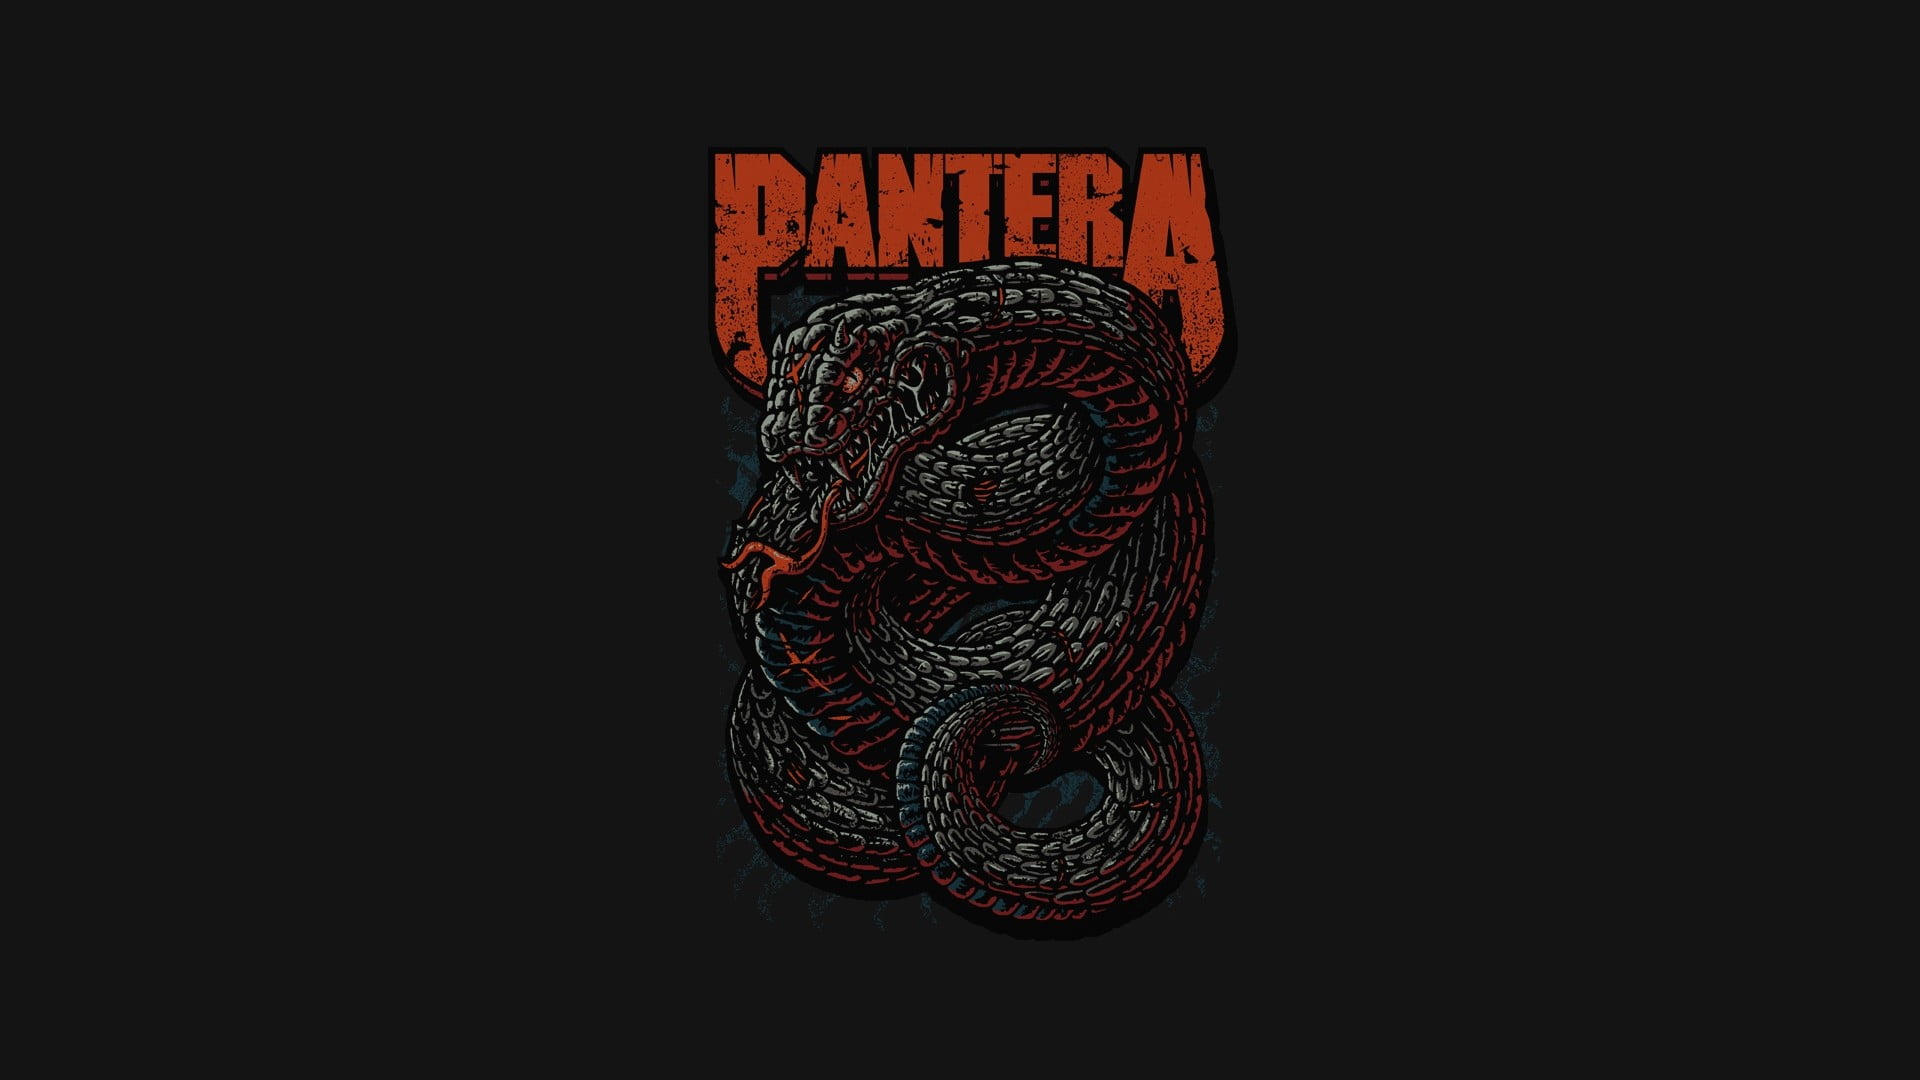 Pantera logo, Pantera, music, heavy metal, thrash metal